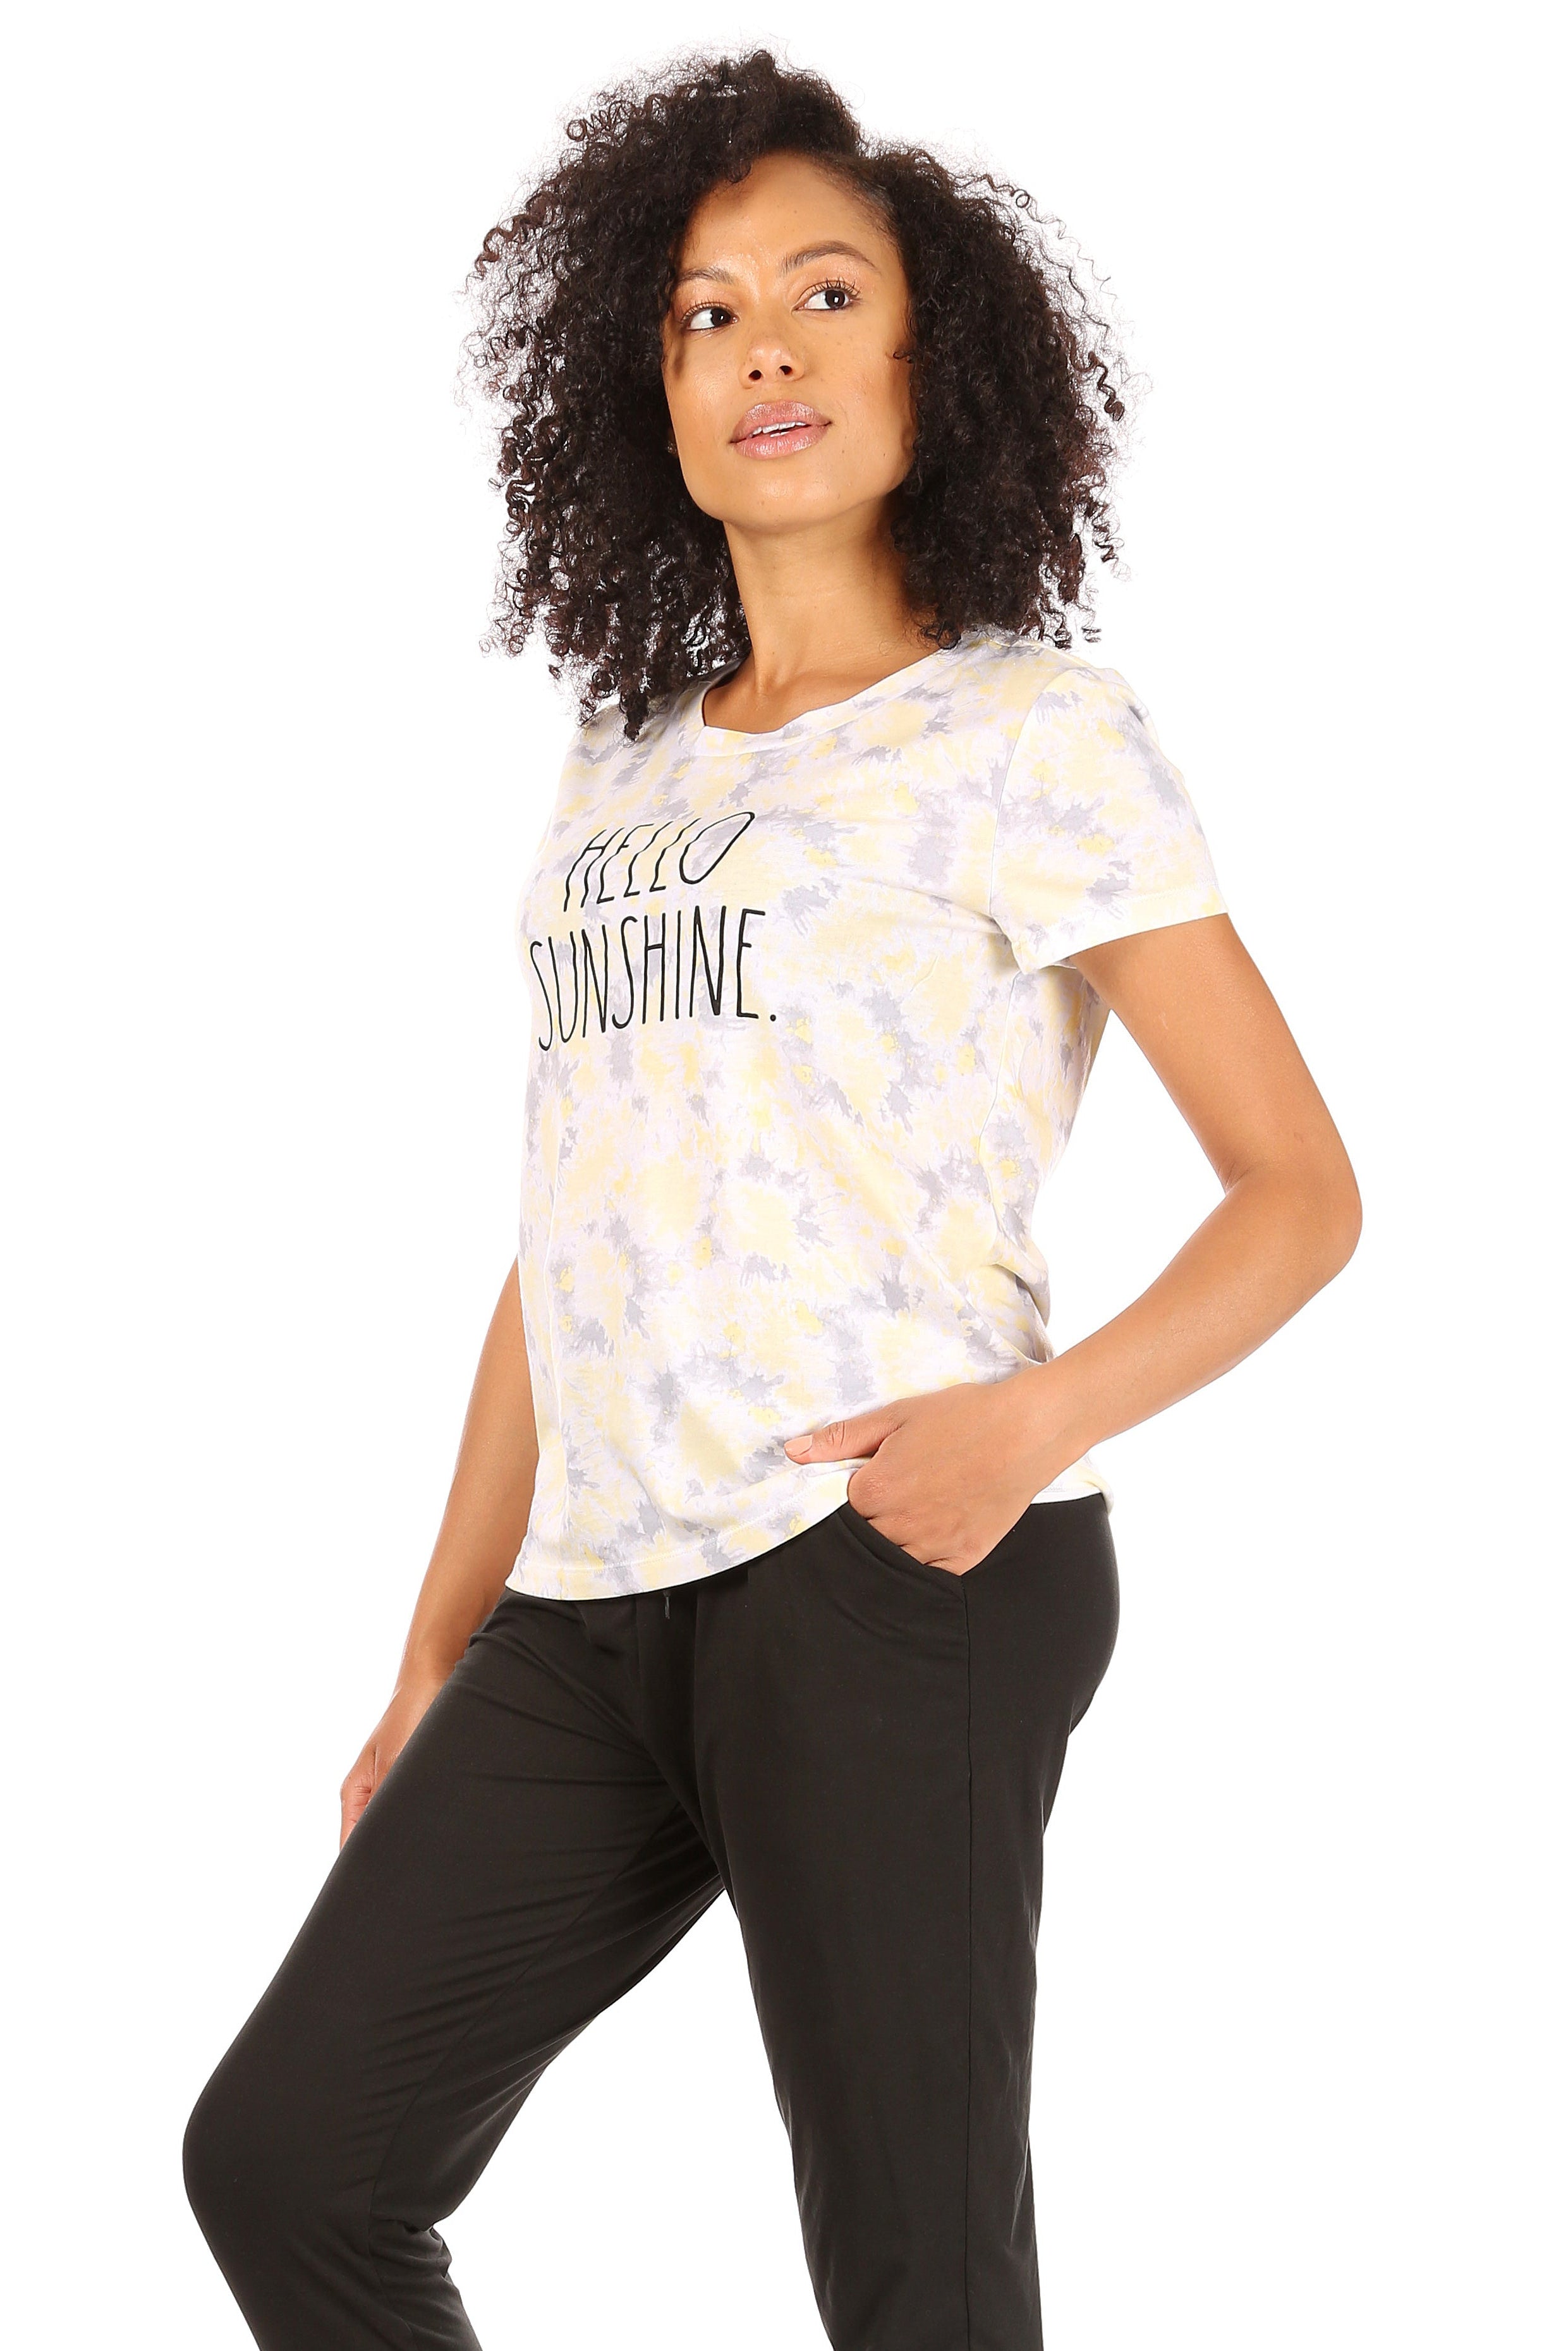 Women's "HELLO SUNSHINE" Short Sleeve Artist T-Shirt - Rae Dunn Wear